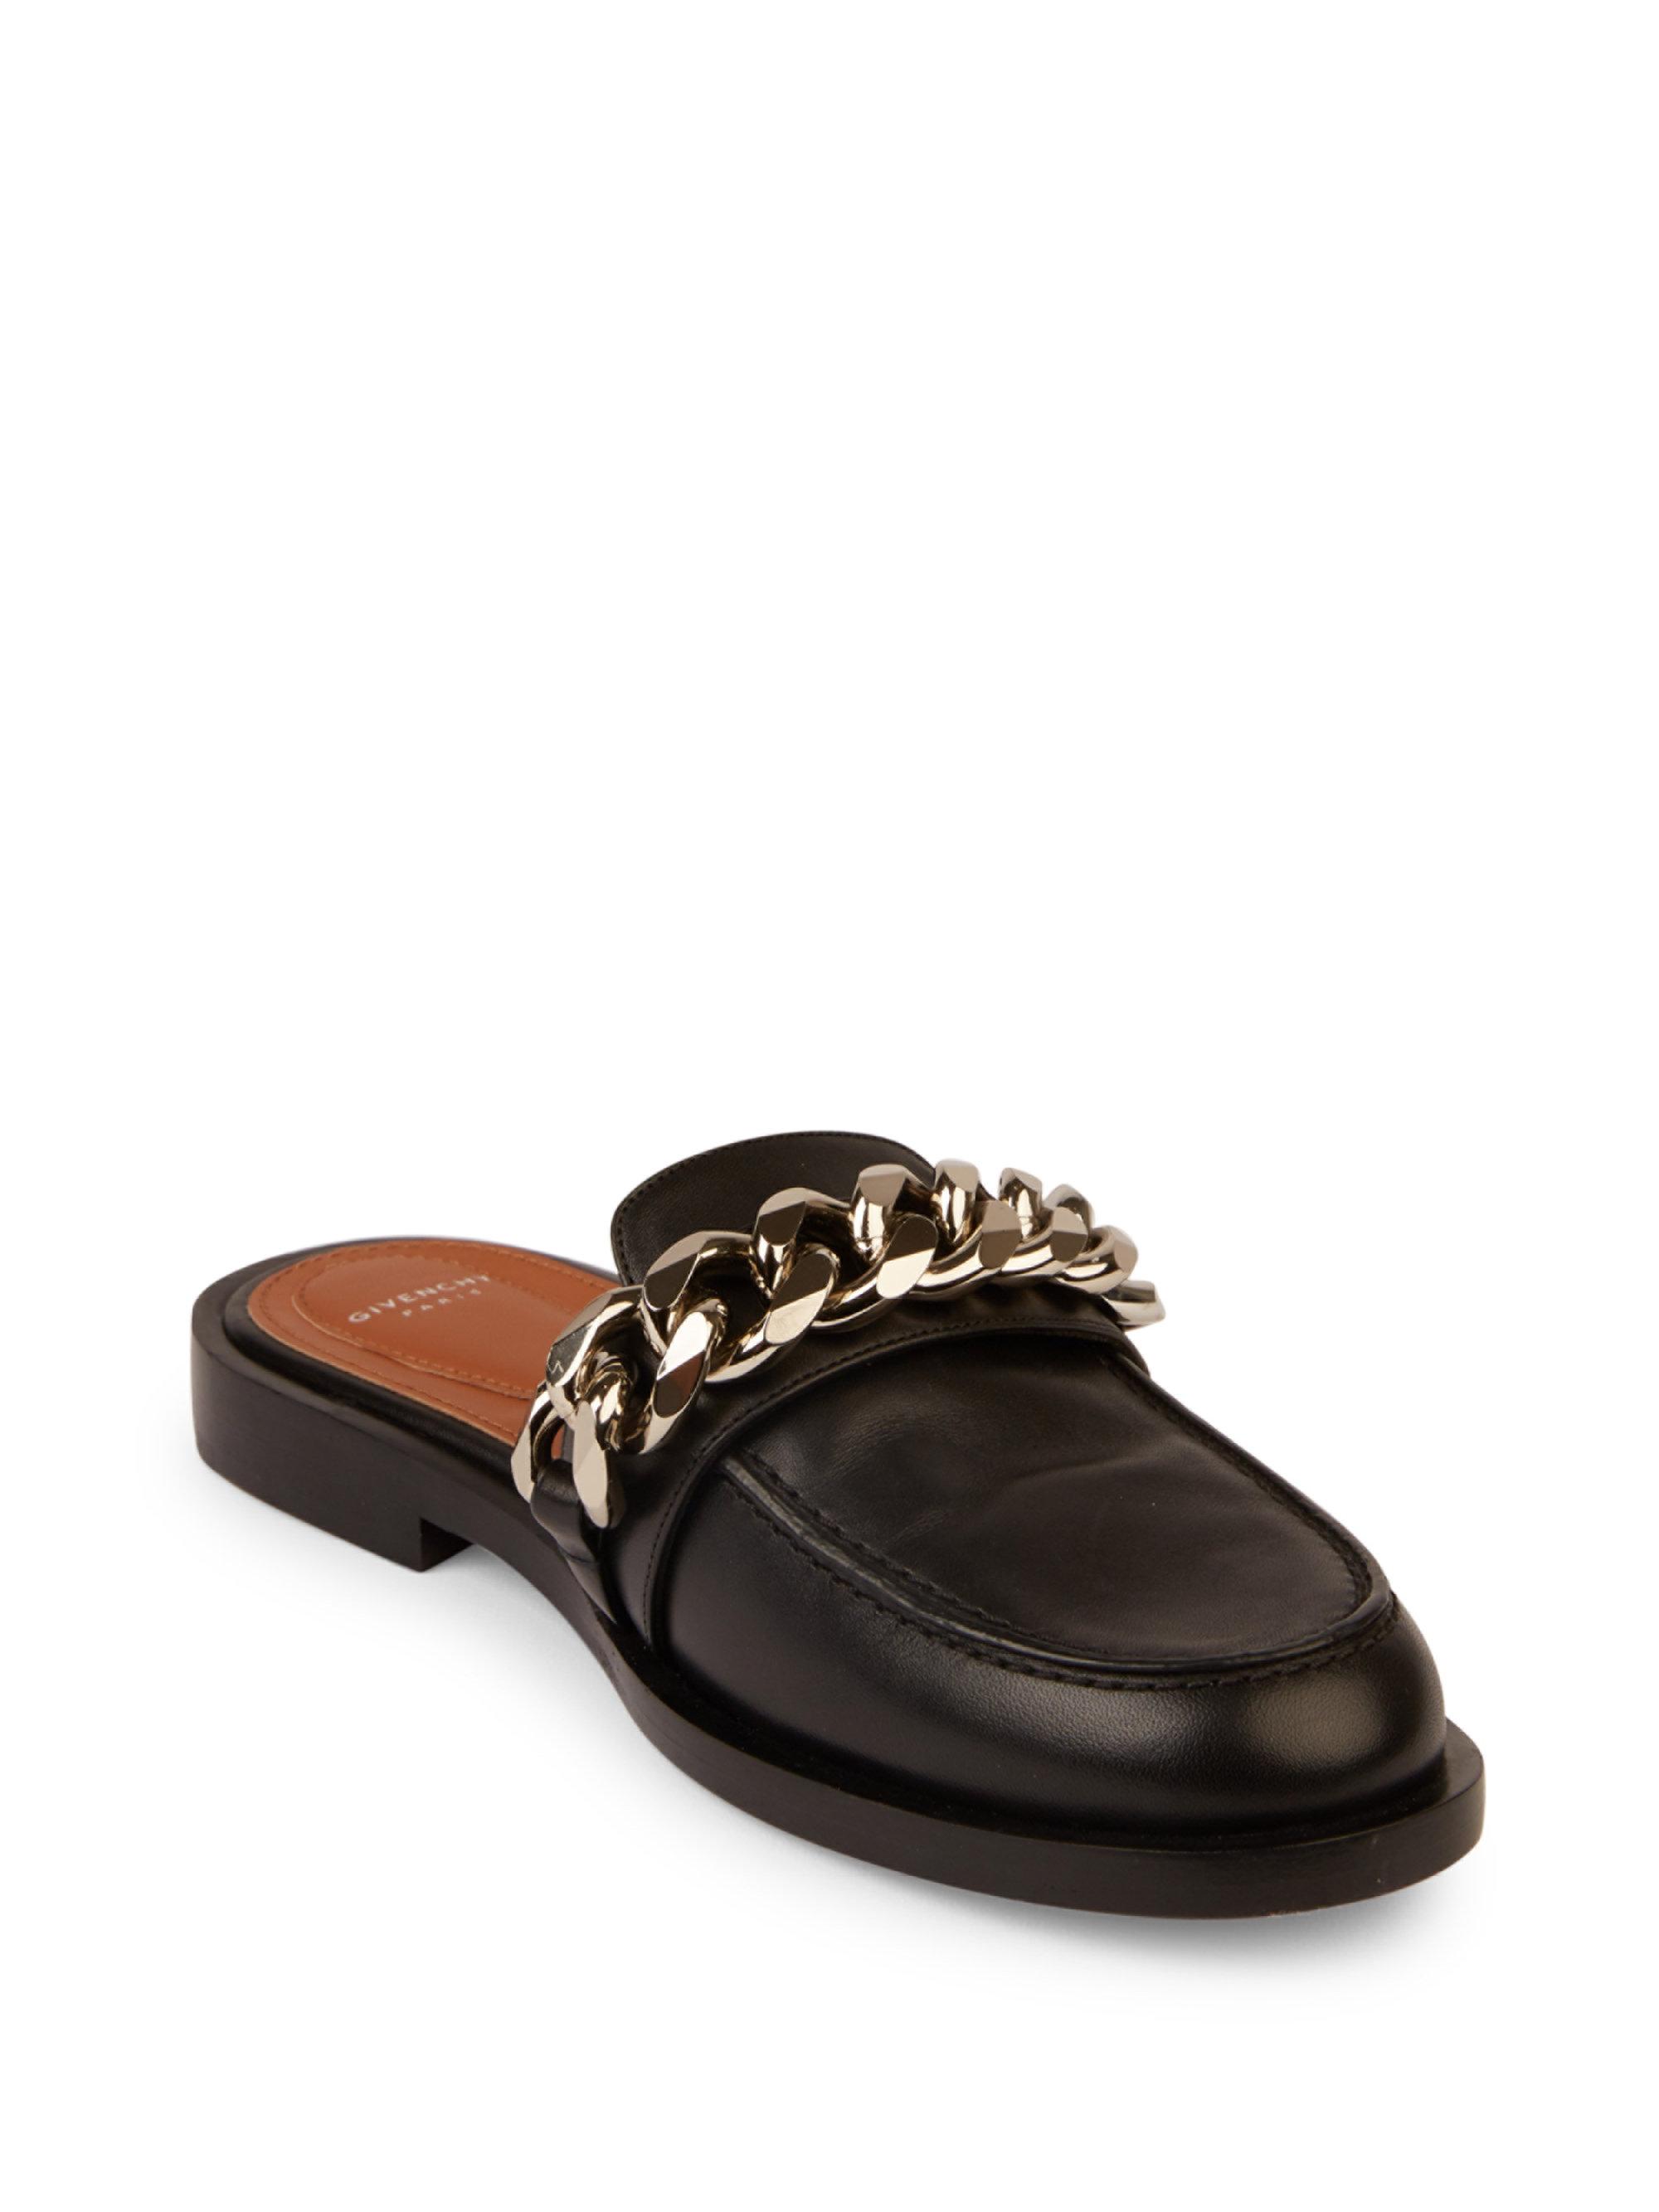 black leather loafer slides